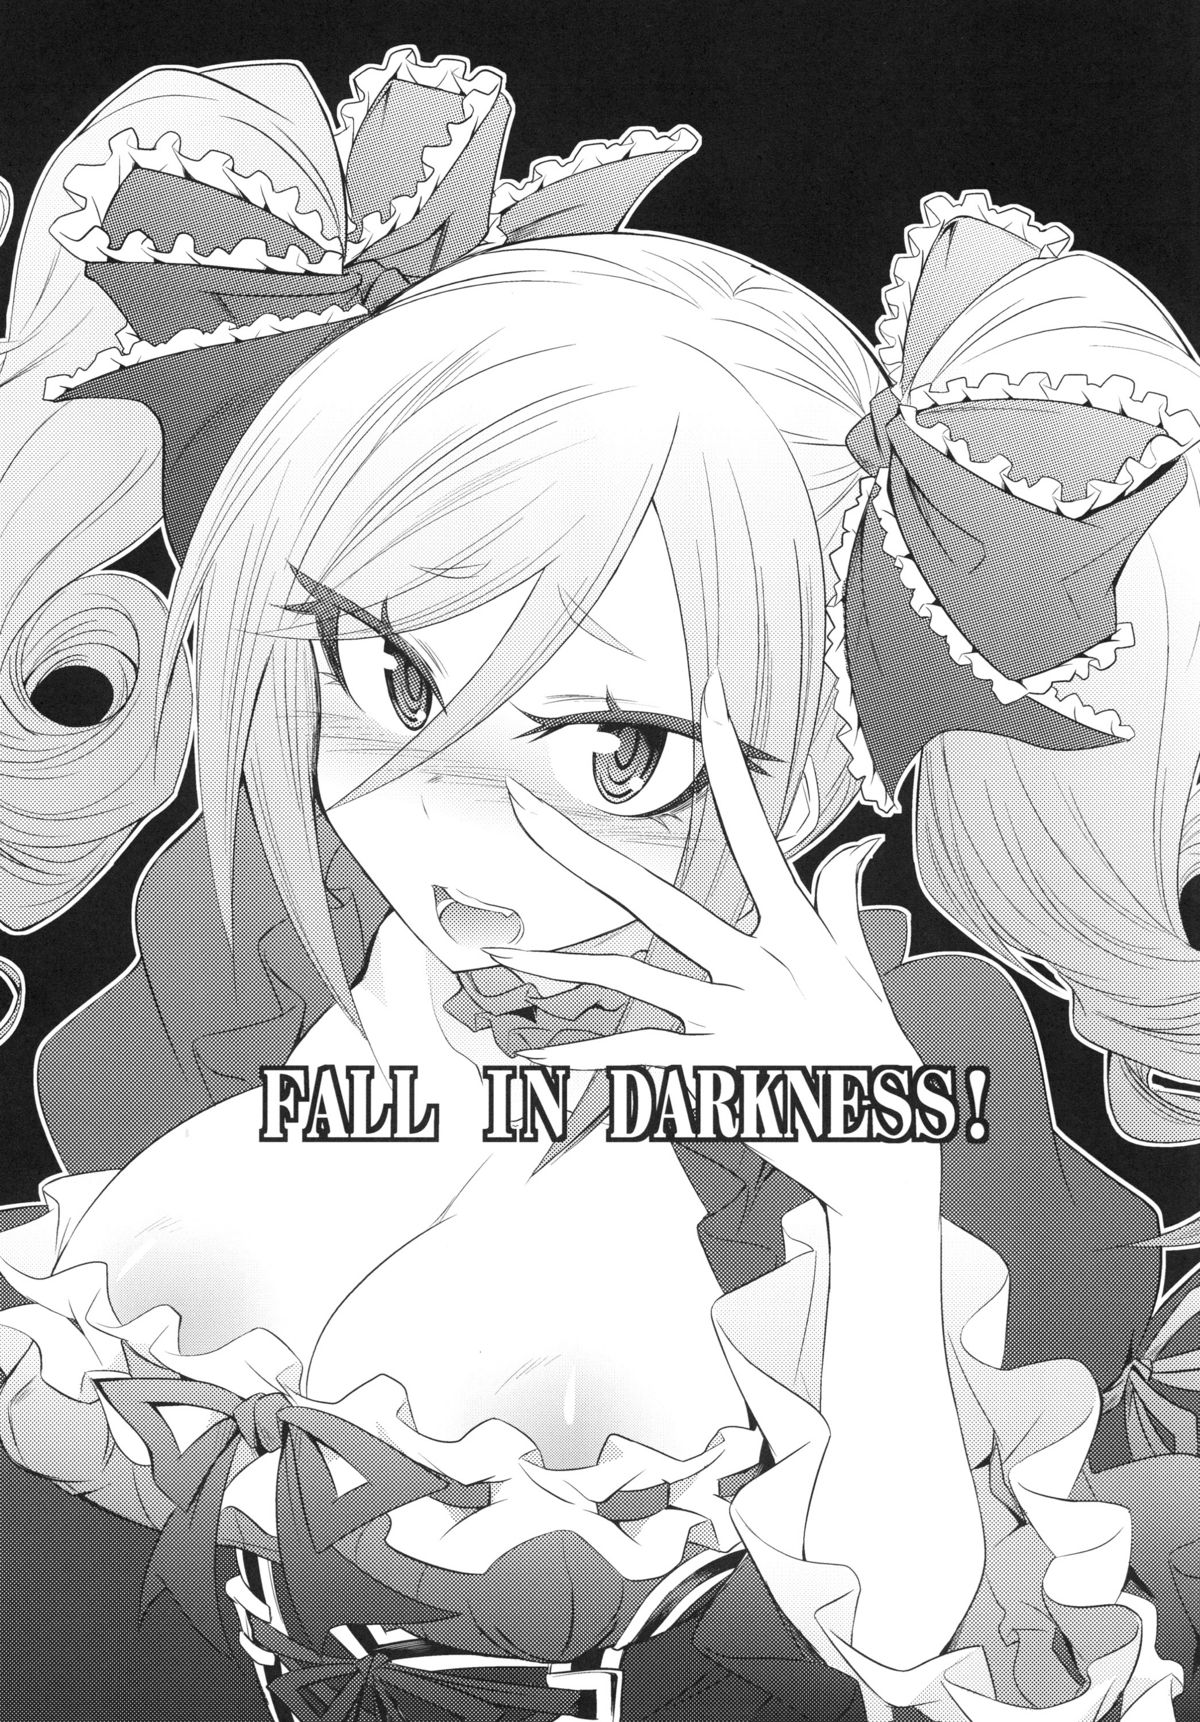 [ぐらヴィ団 (コバヤシテツヤ)] FALL IN DARKNESS! (アイドルマスター シンデレラガールズ) [DL版]